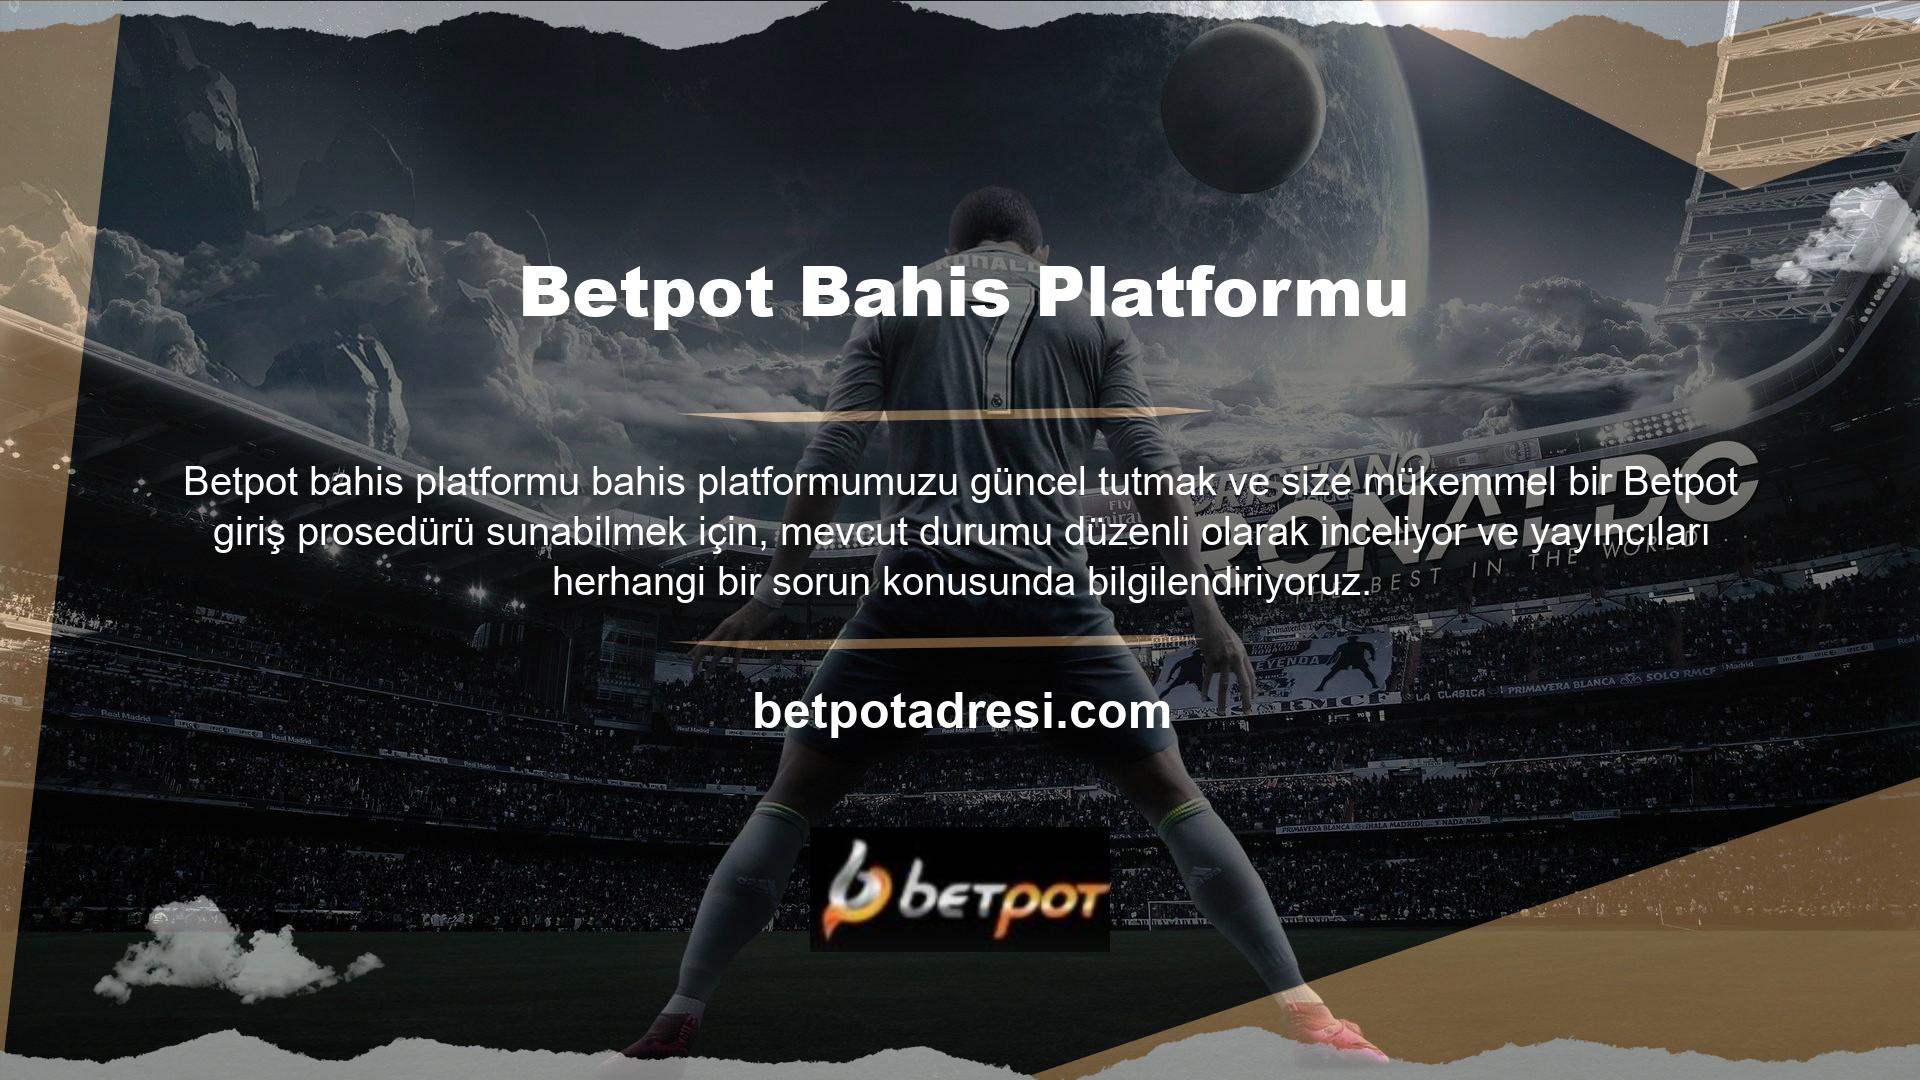 Bu bağlamda müşterilerine her zaman en iyi bahis deneyimini sunmak isteyen Betpot web sitesi, son zamanlarda yapılan geliştirme çalışmaları nedeniyle erişim prosedürlerini değiştirme kararı almıştır